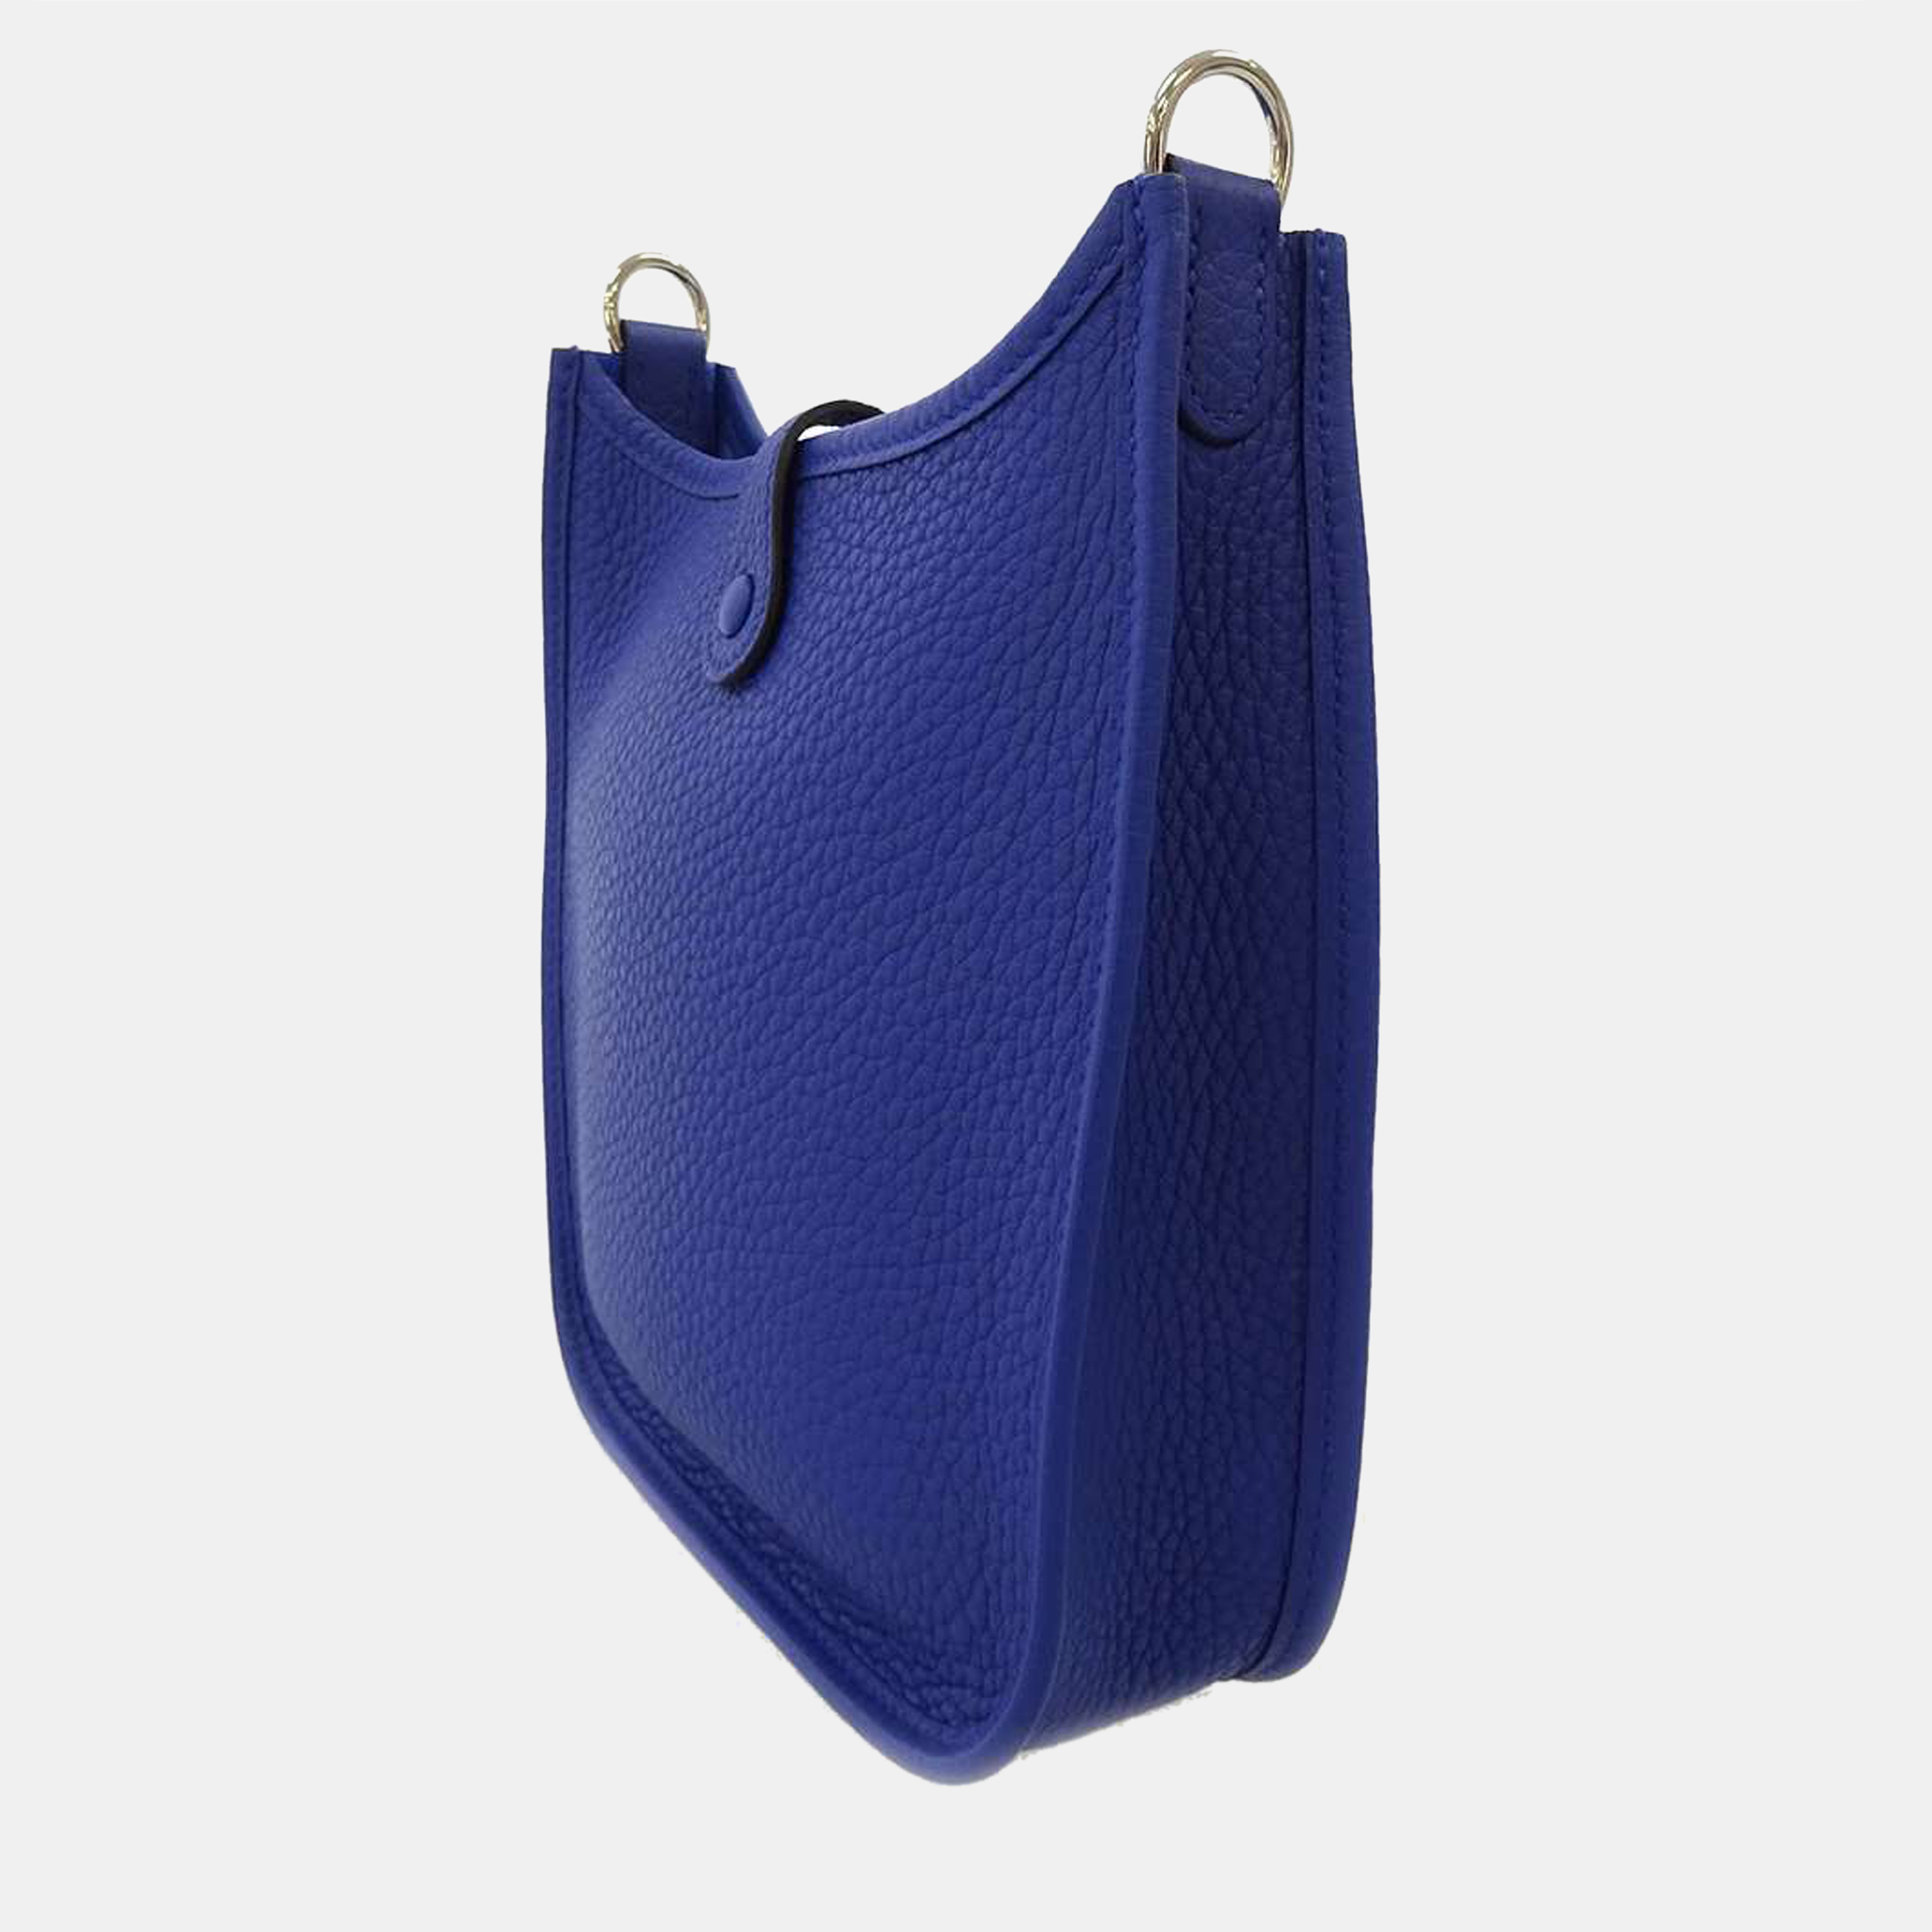 

Hermes Blue Taurillon Clemence Leather Evelyne TPM Shoulder Bag